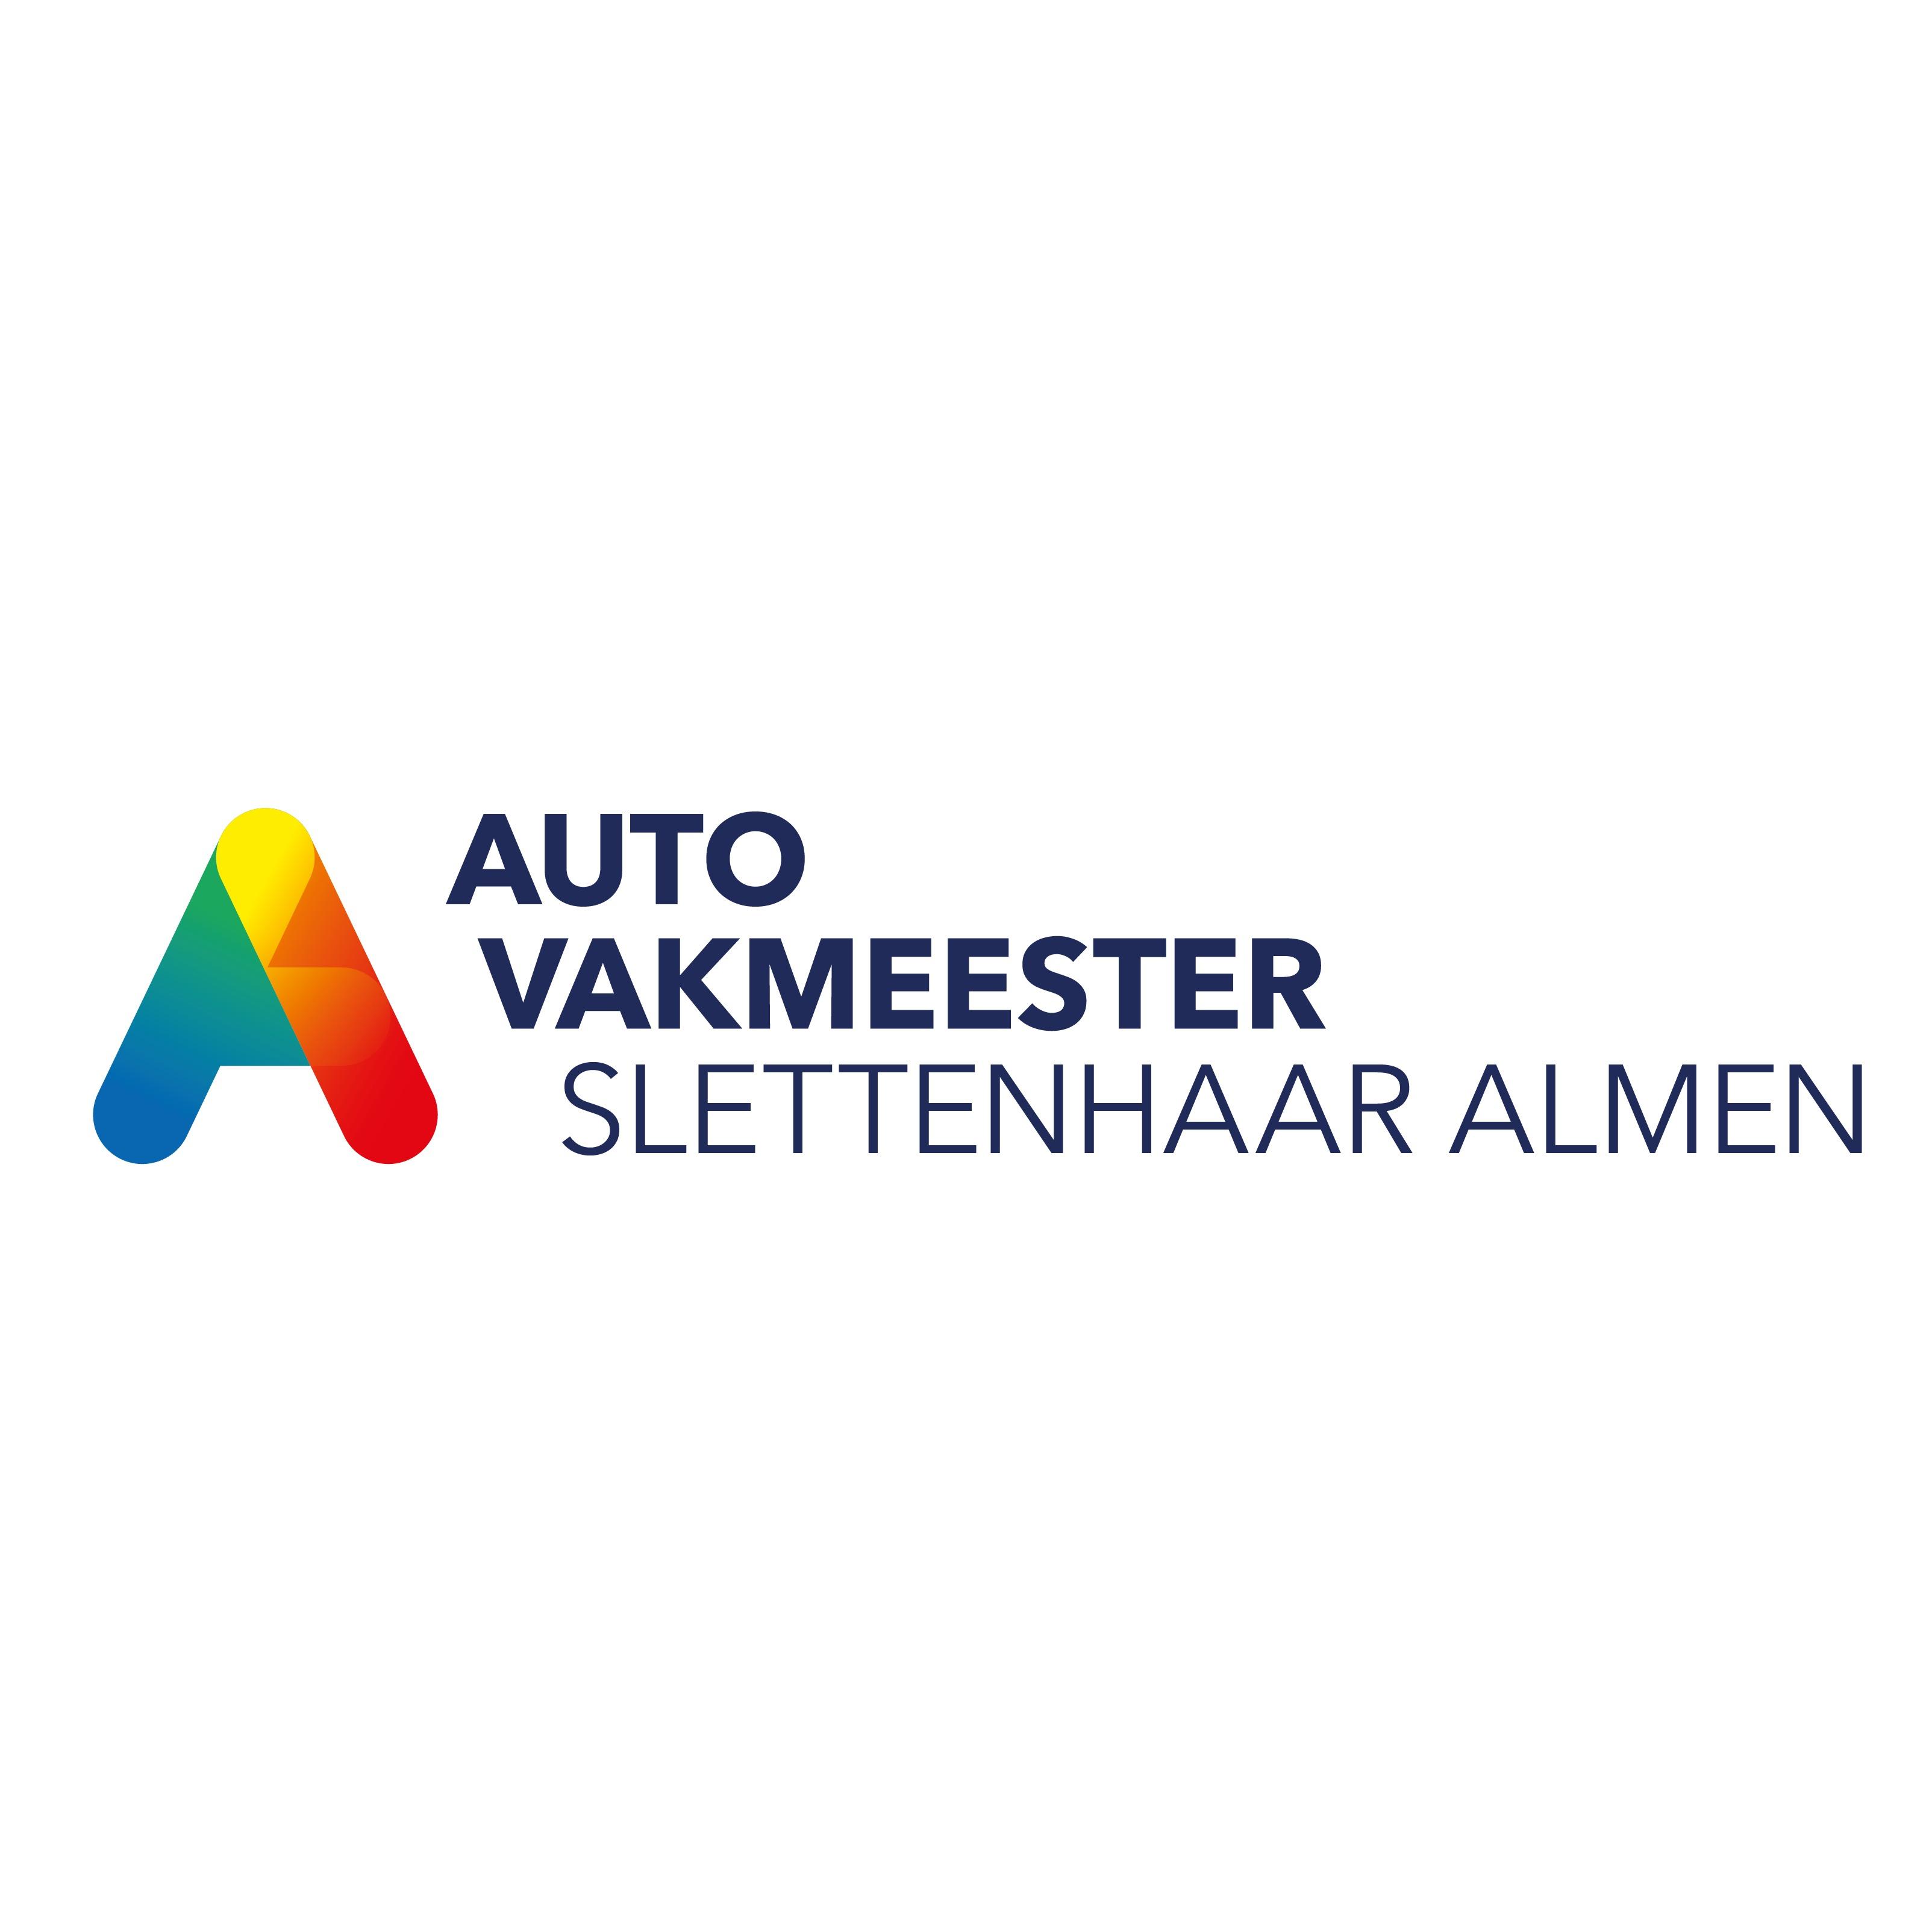 Autovakmeester Slettenhaar Almen Logo